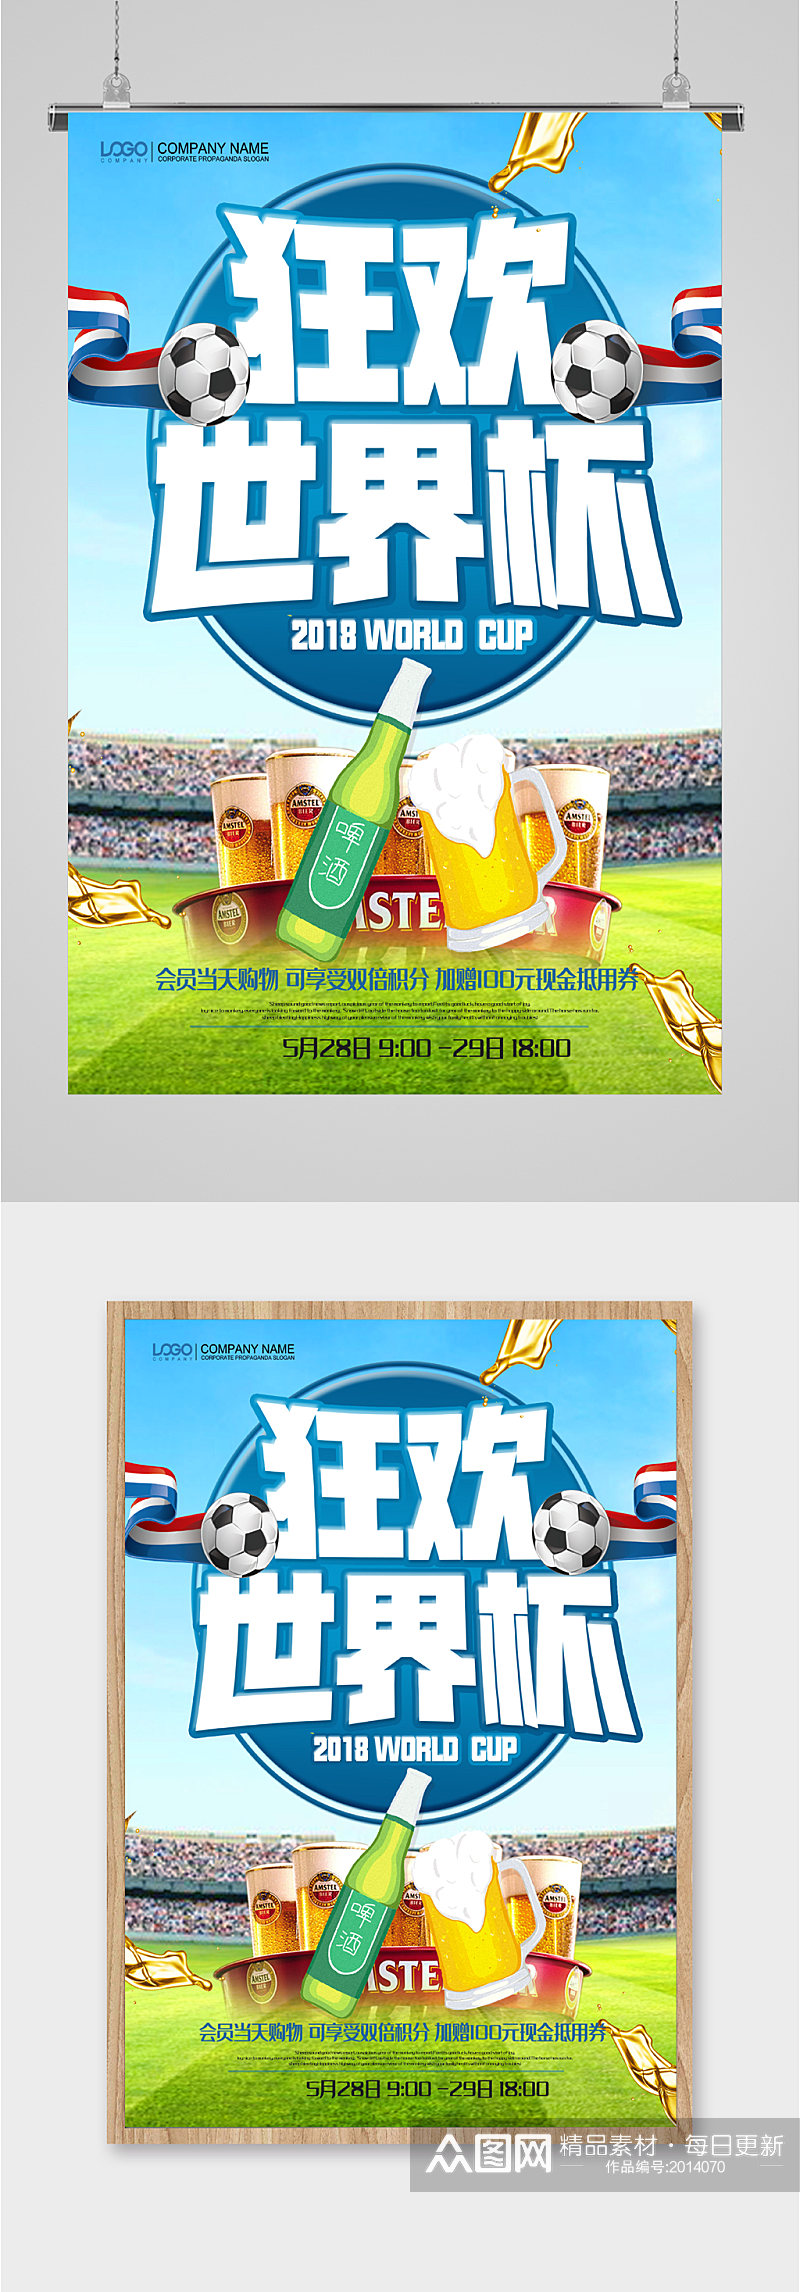 狂欢世界杯宣传海报素材